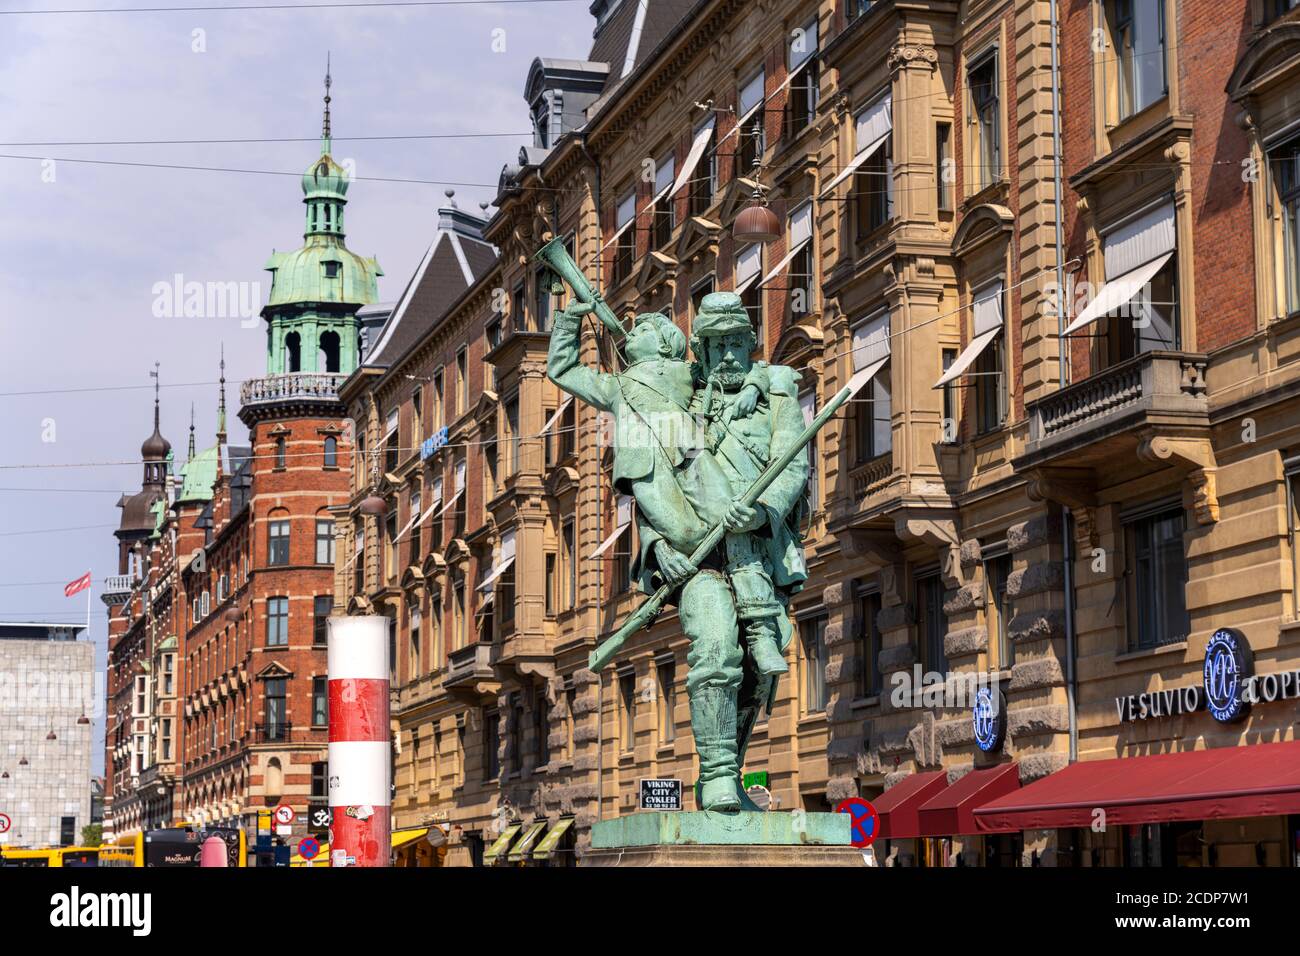 Statue Der Landsoldat mit dem kleinen Hornbläser med den lille hornblæser)auf dem Rathausplatz, Kopenhagen, Dänemark, Europa |  Statue Landsoldaten me Stock Photo